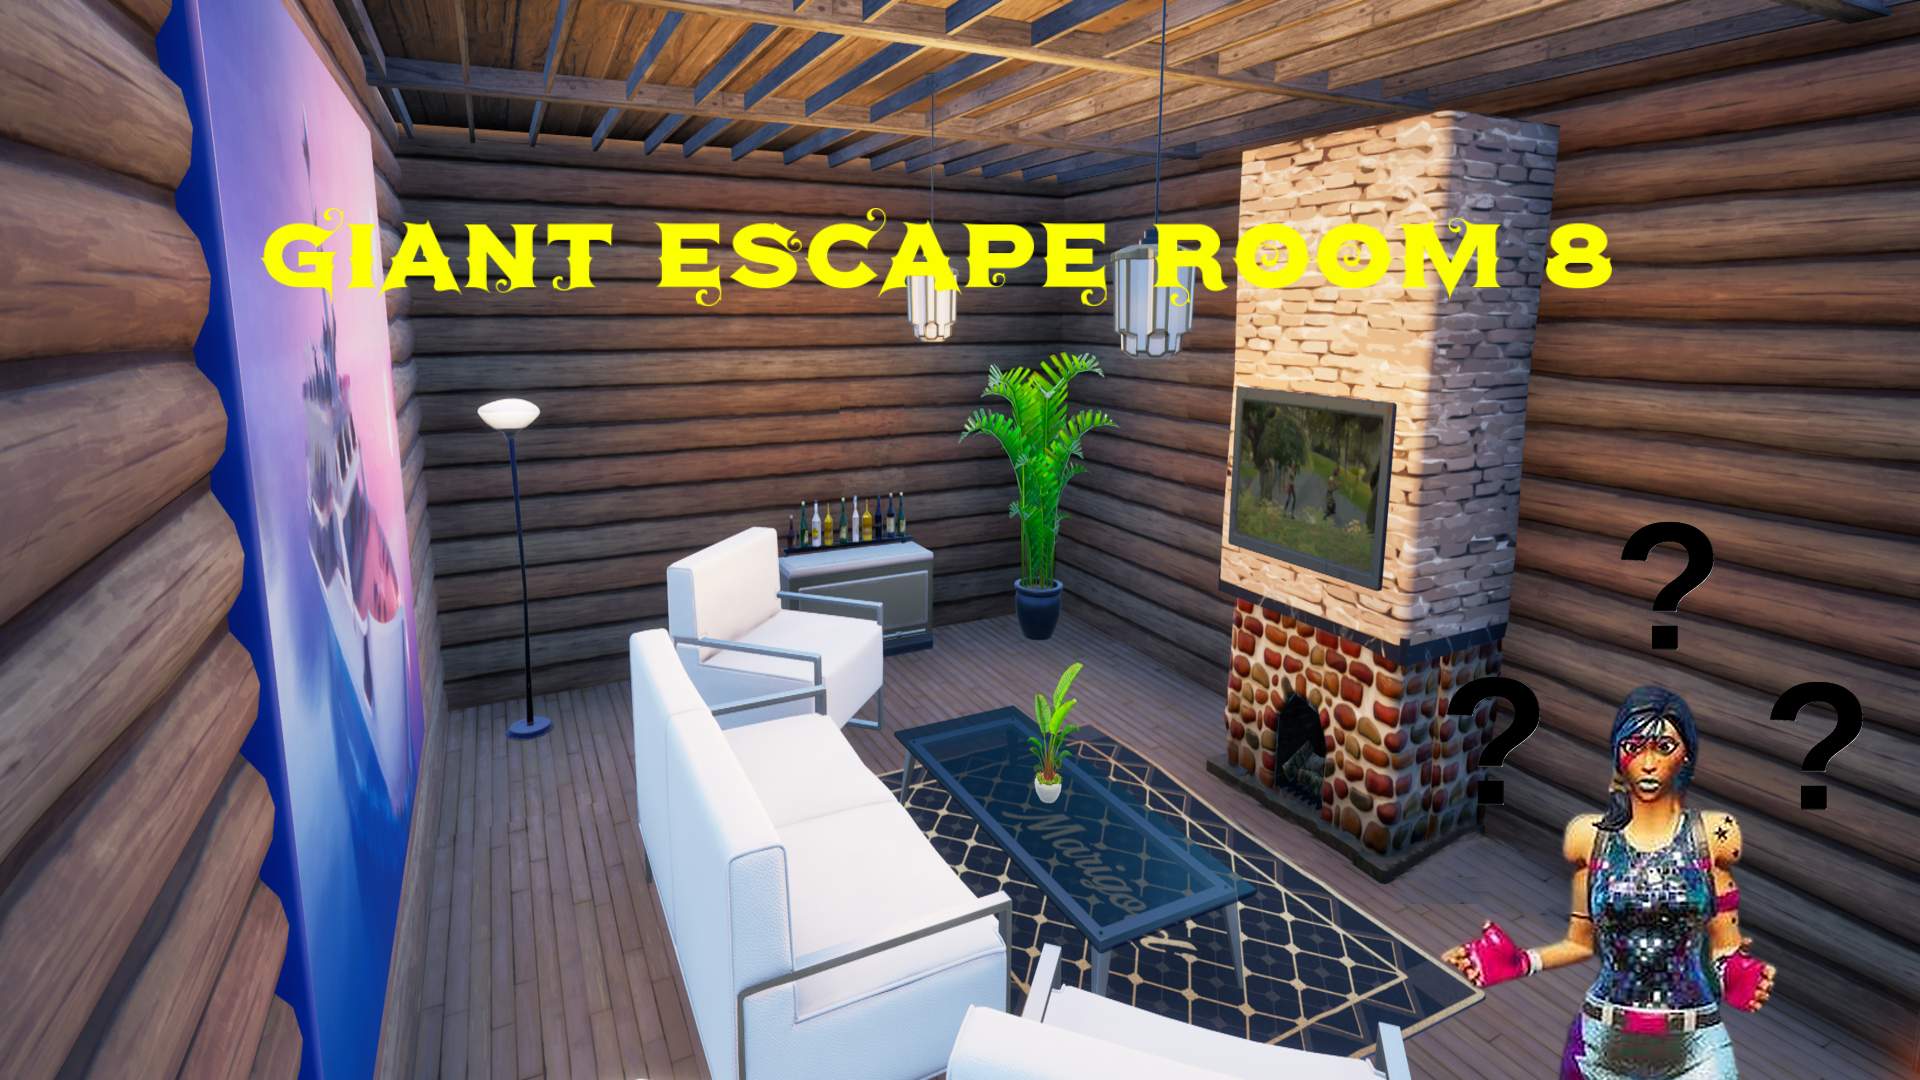 Secret Agent Prison Escape - Fortnite Creative Map Code - Dropnite